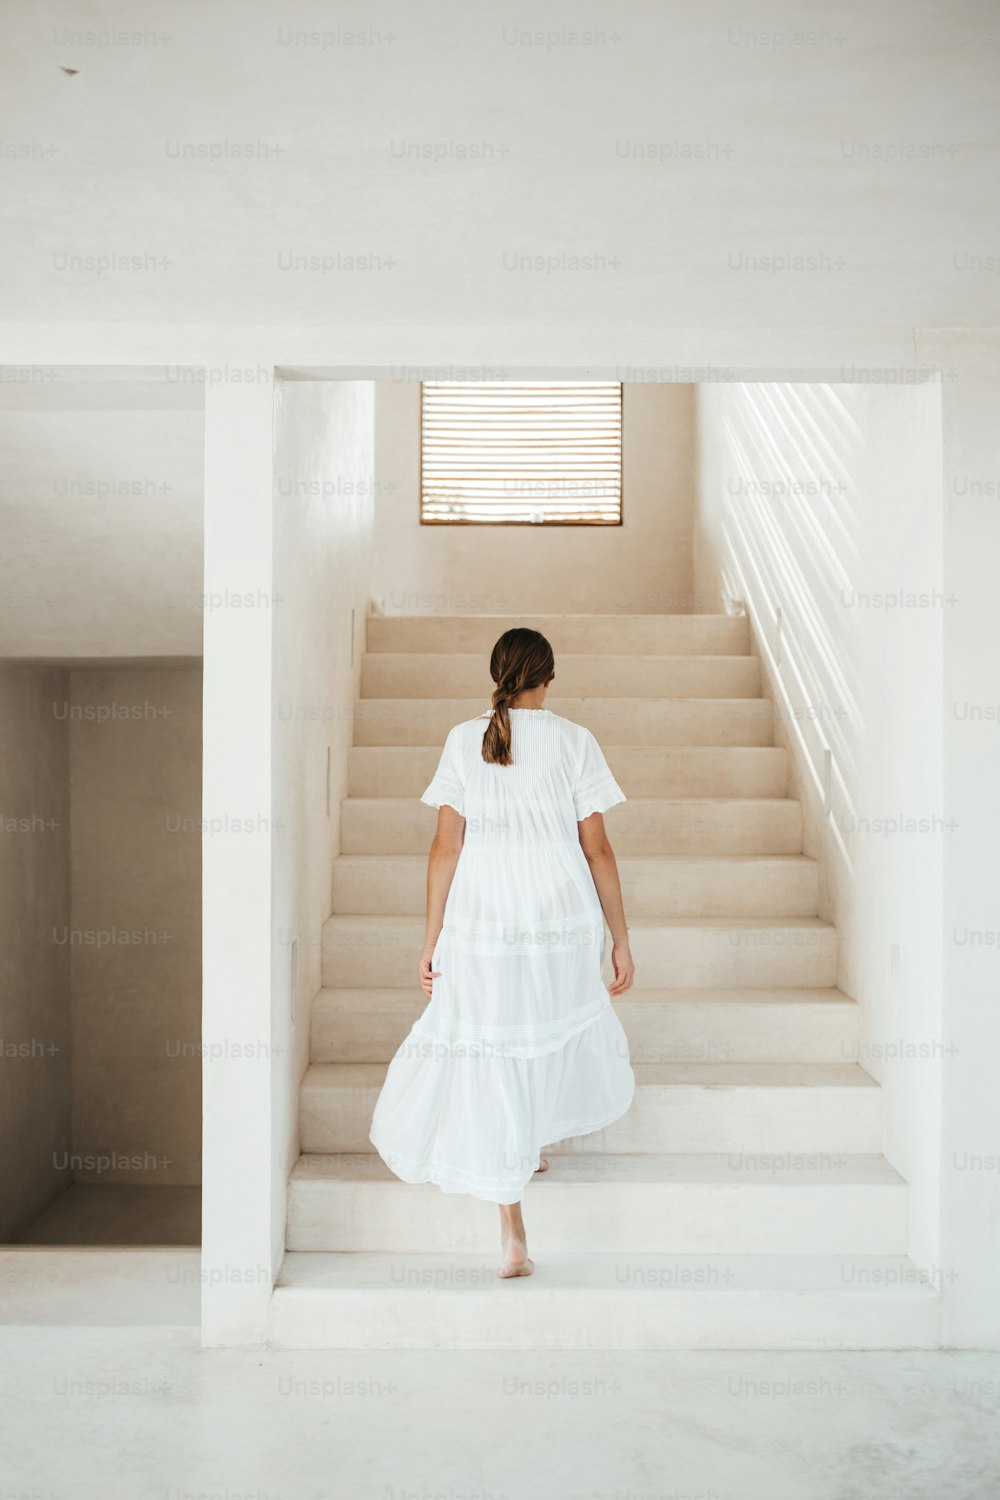 uma mulher com um vestido branco subindo um lance de escadas